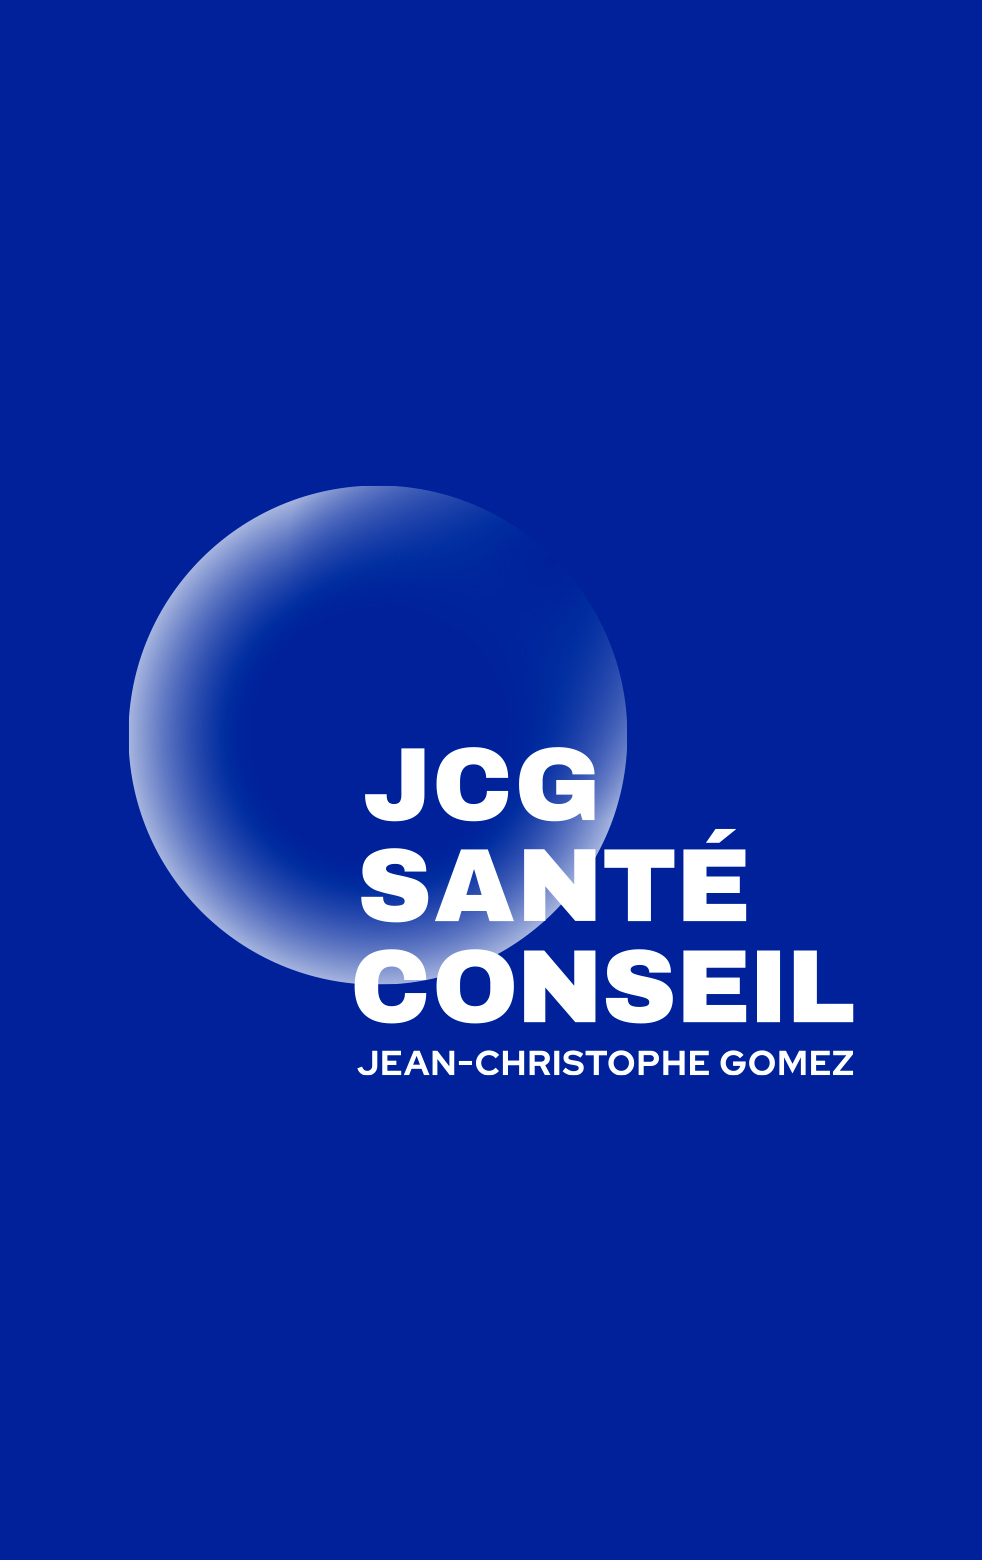 autograff-design-graphique-graphiste-toulouse-france-logo-website-jcg-sante-conseil-coach-blanc